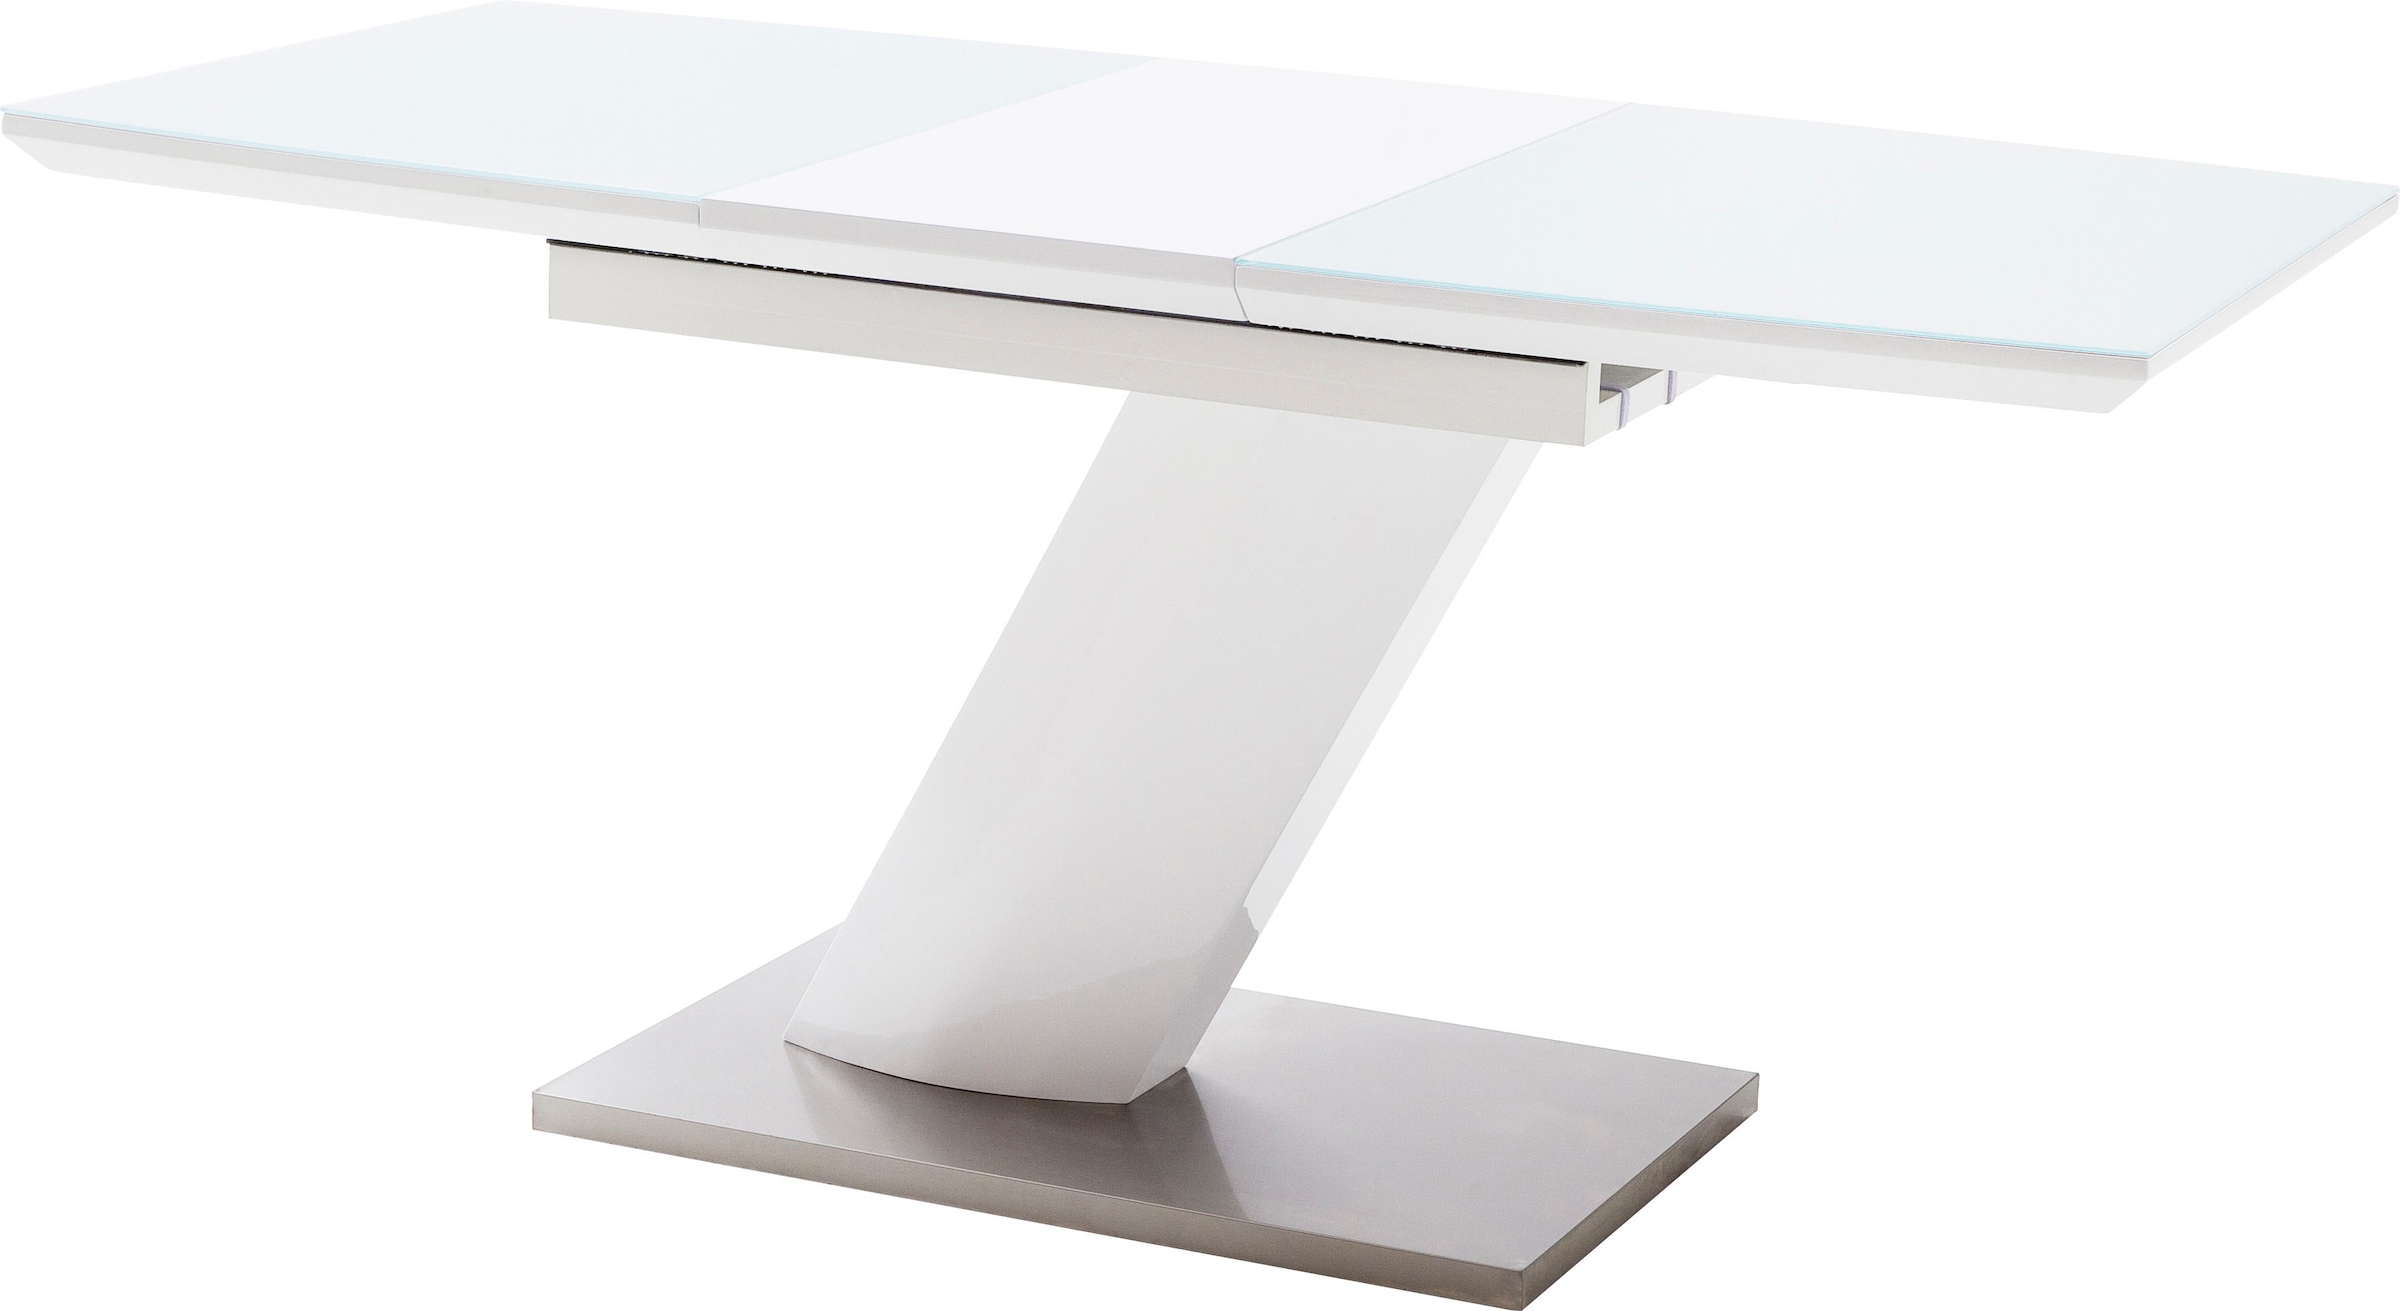 MCA furniture Esstisch »Galina«, Bootsform in weiß mit Synchronauszug vormontiert, Sicherheitsglas